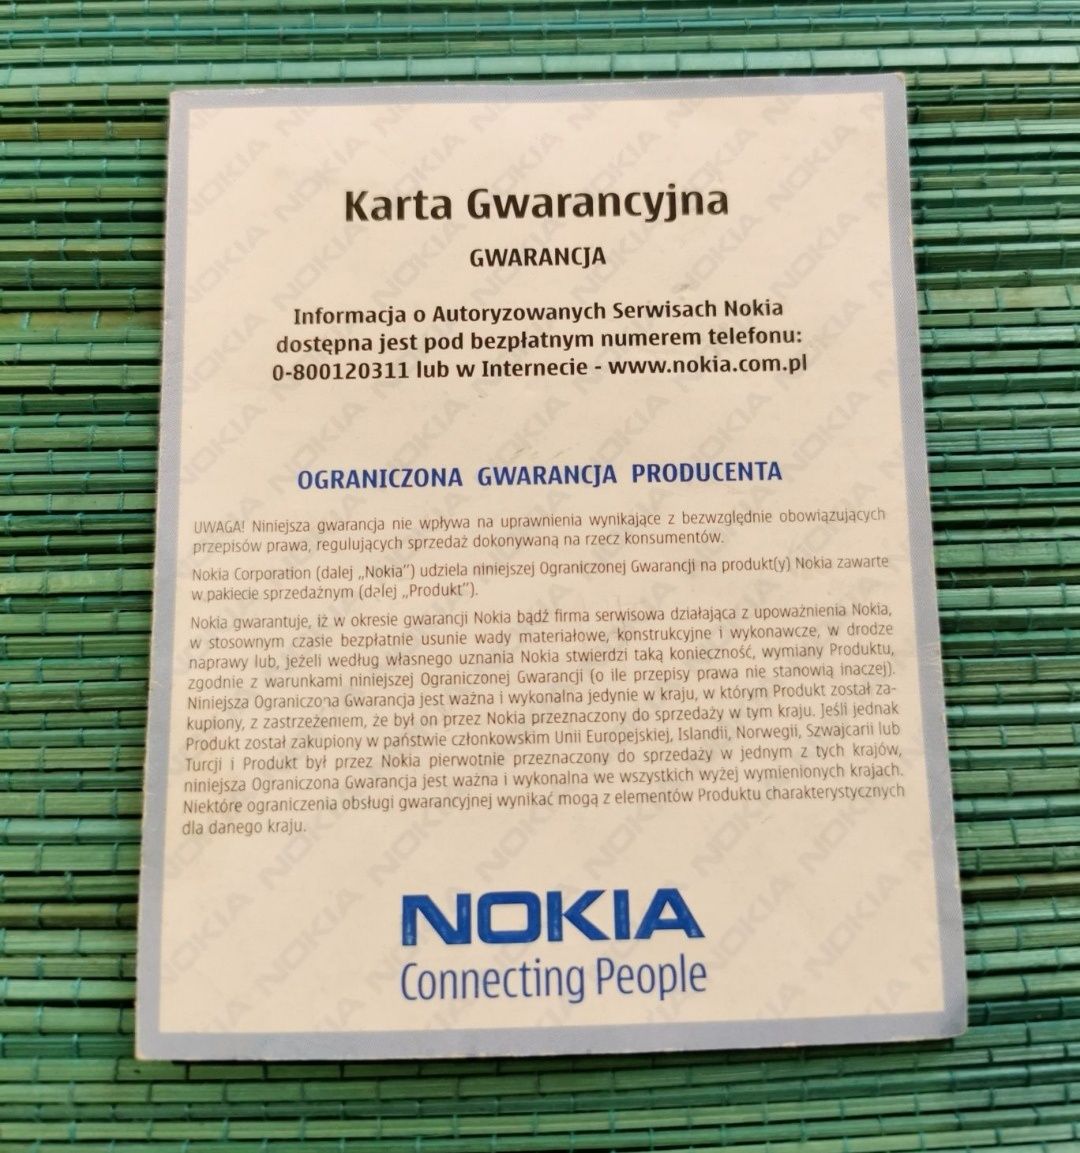 Nokia gwarancja.